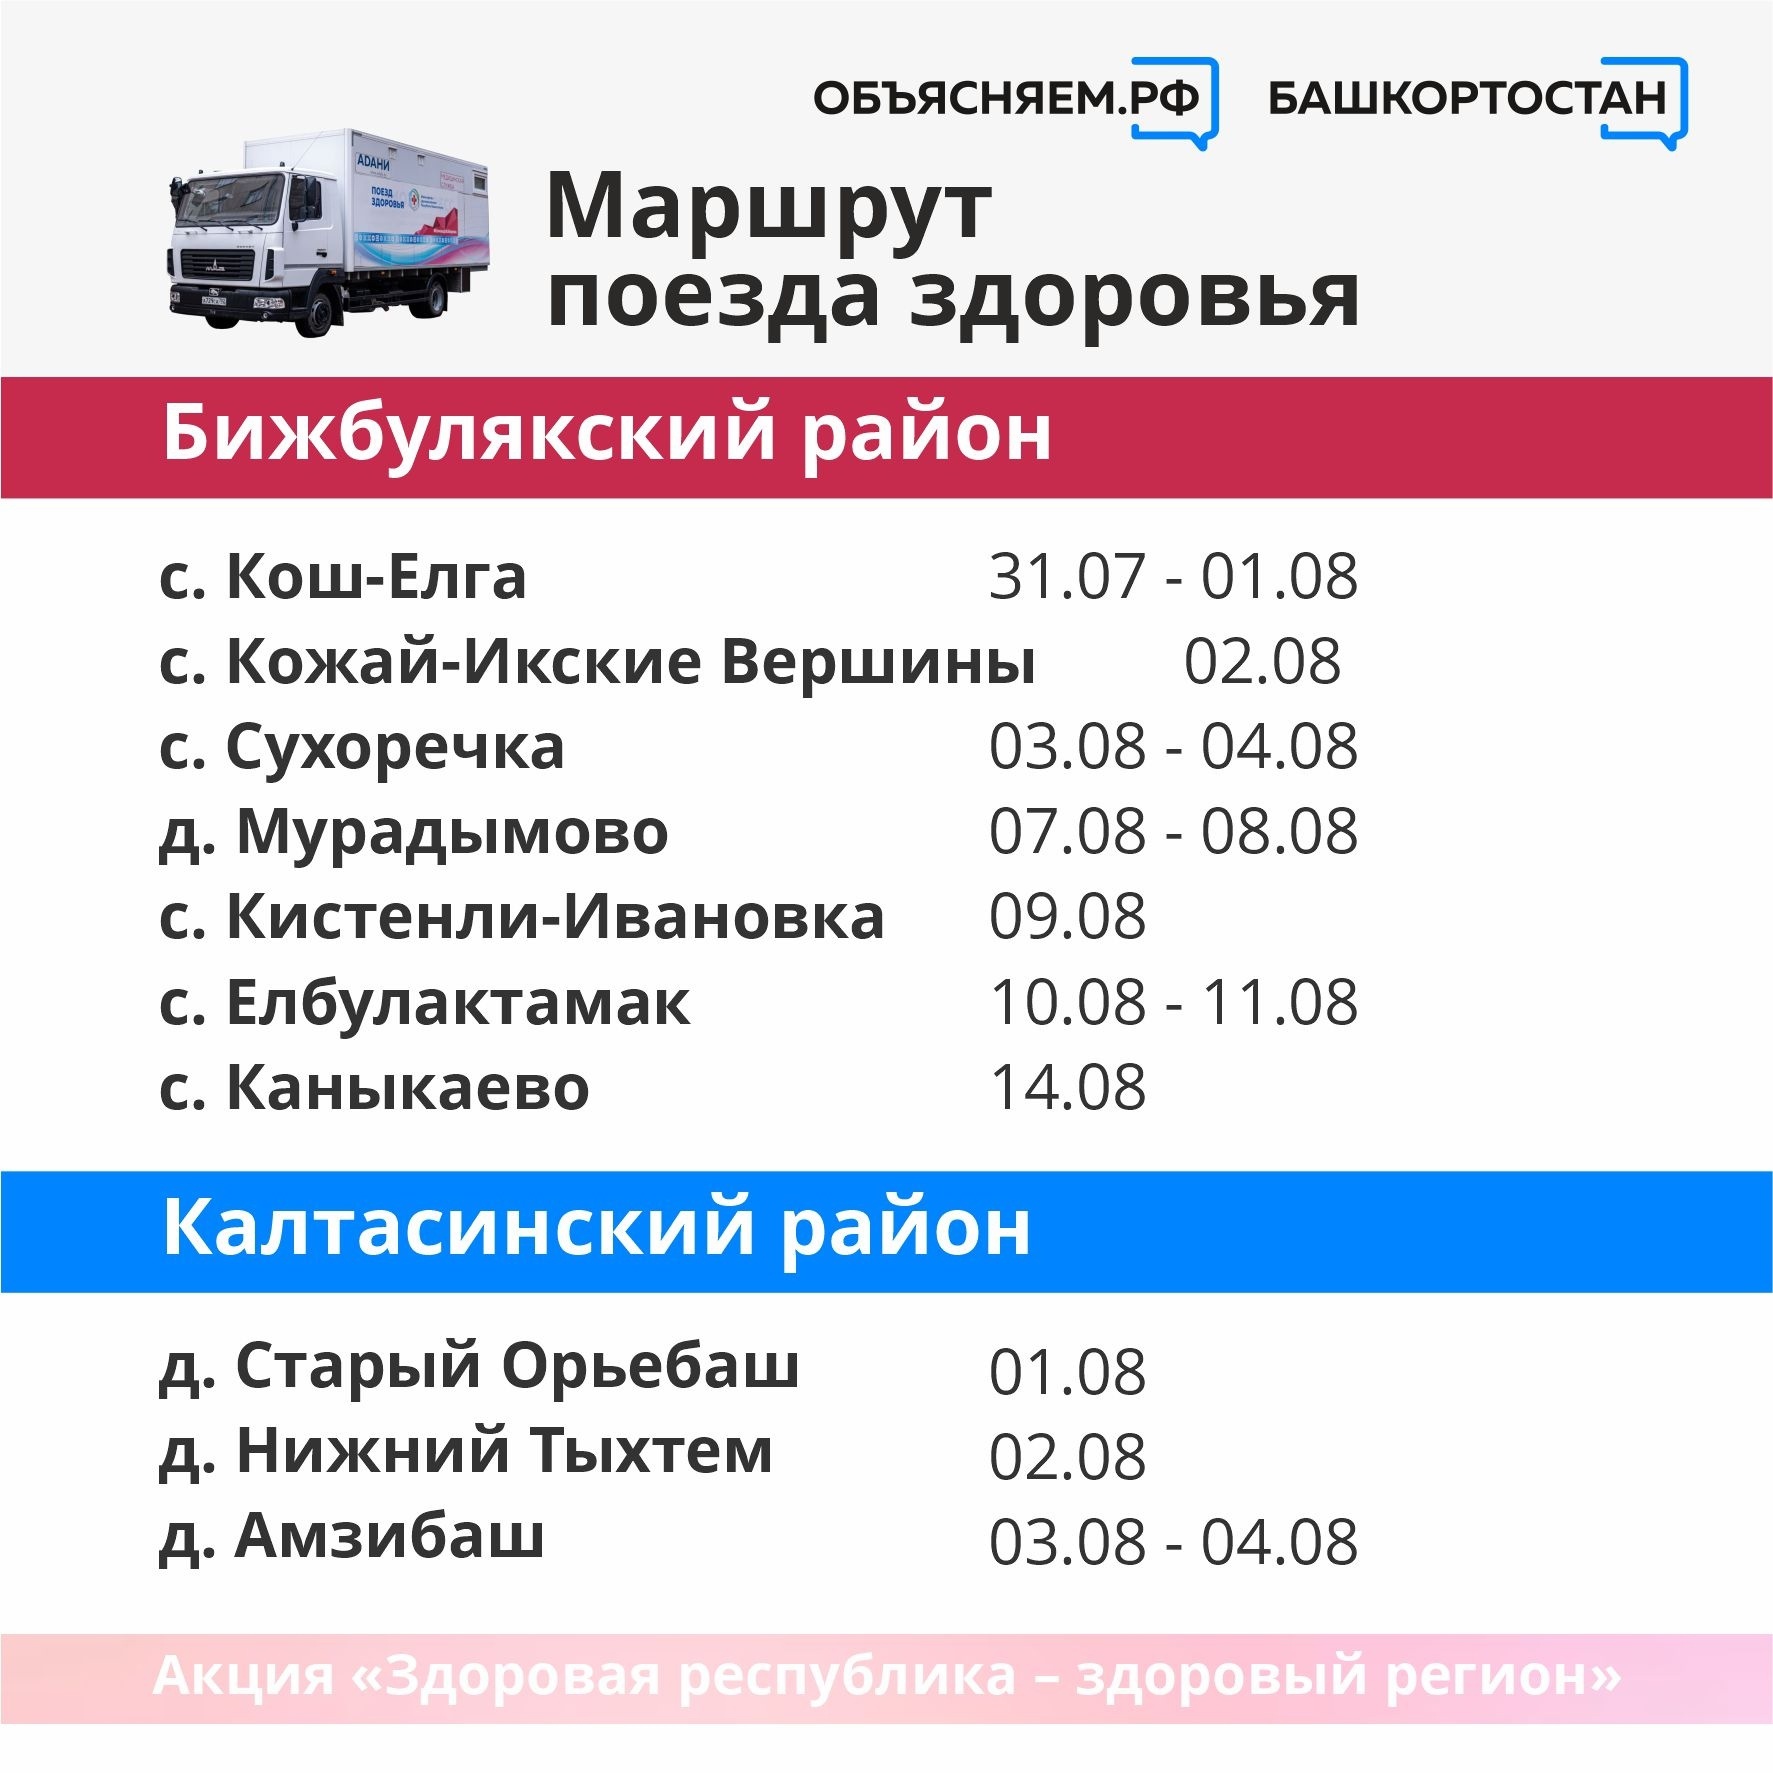 В Башкирии известен график маршрутов «поездов здоровья» в августе